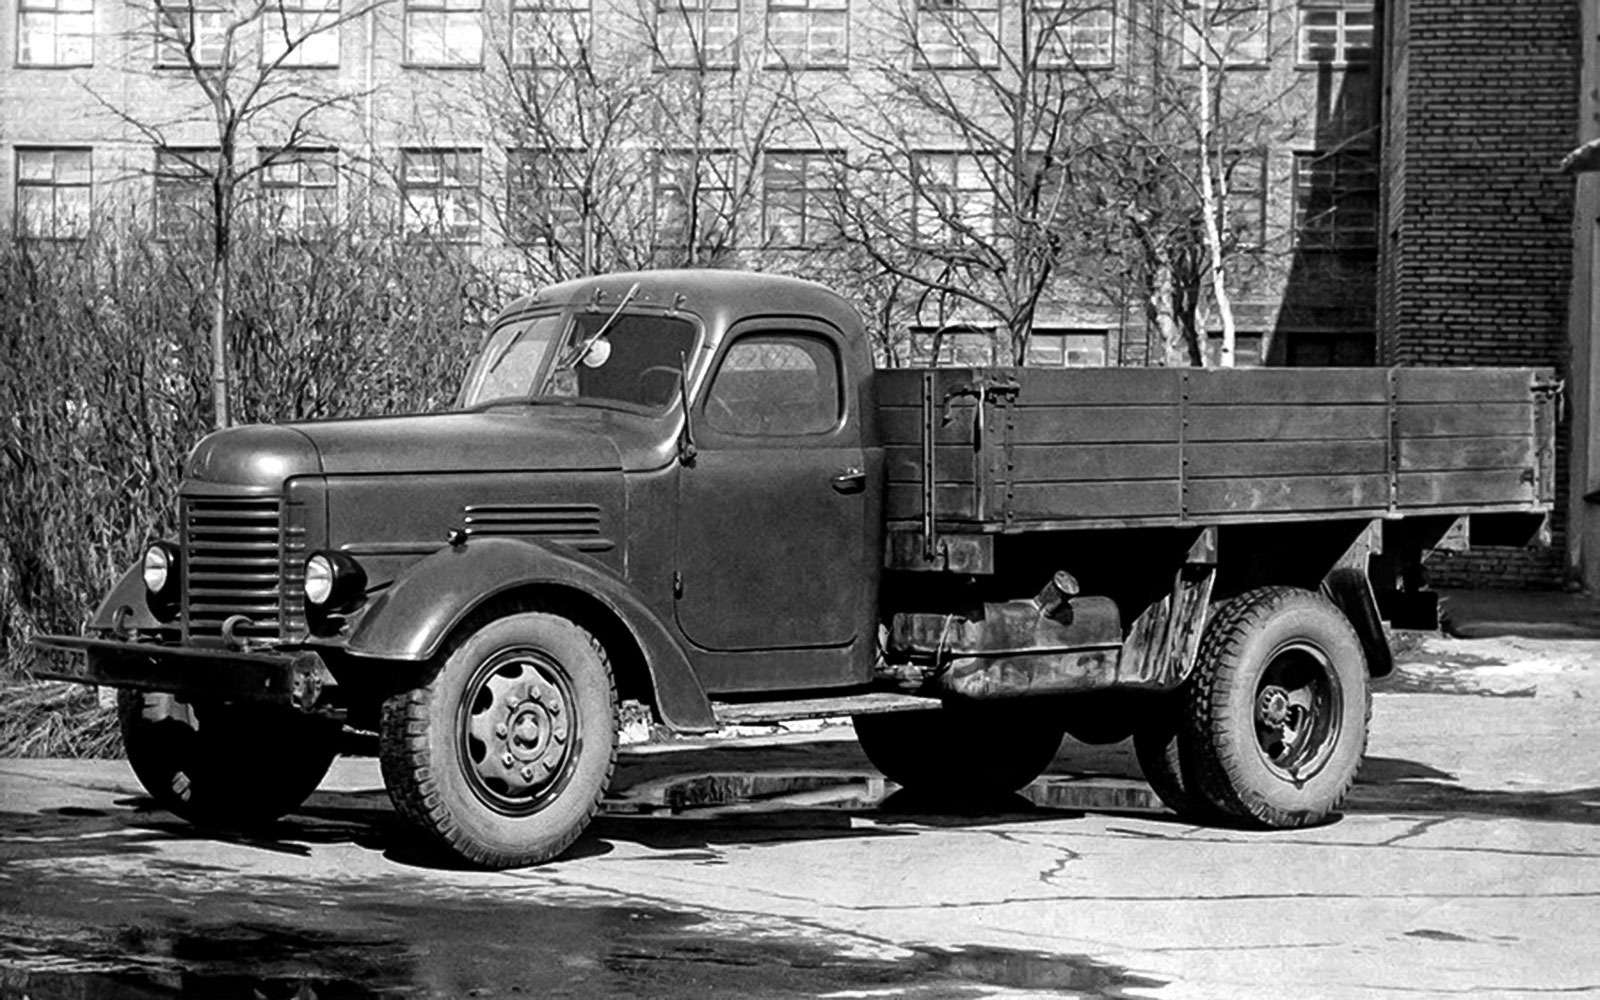 Зил-164 - советский грузовой автомобиль, история создания и практическое использование, особенности конструкции и характеристики, достоинства и недостатки, модификации